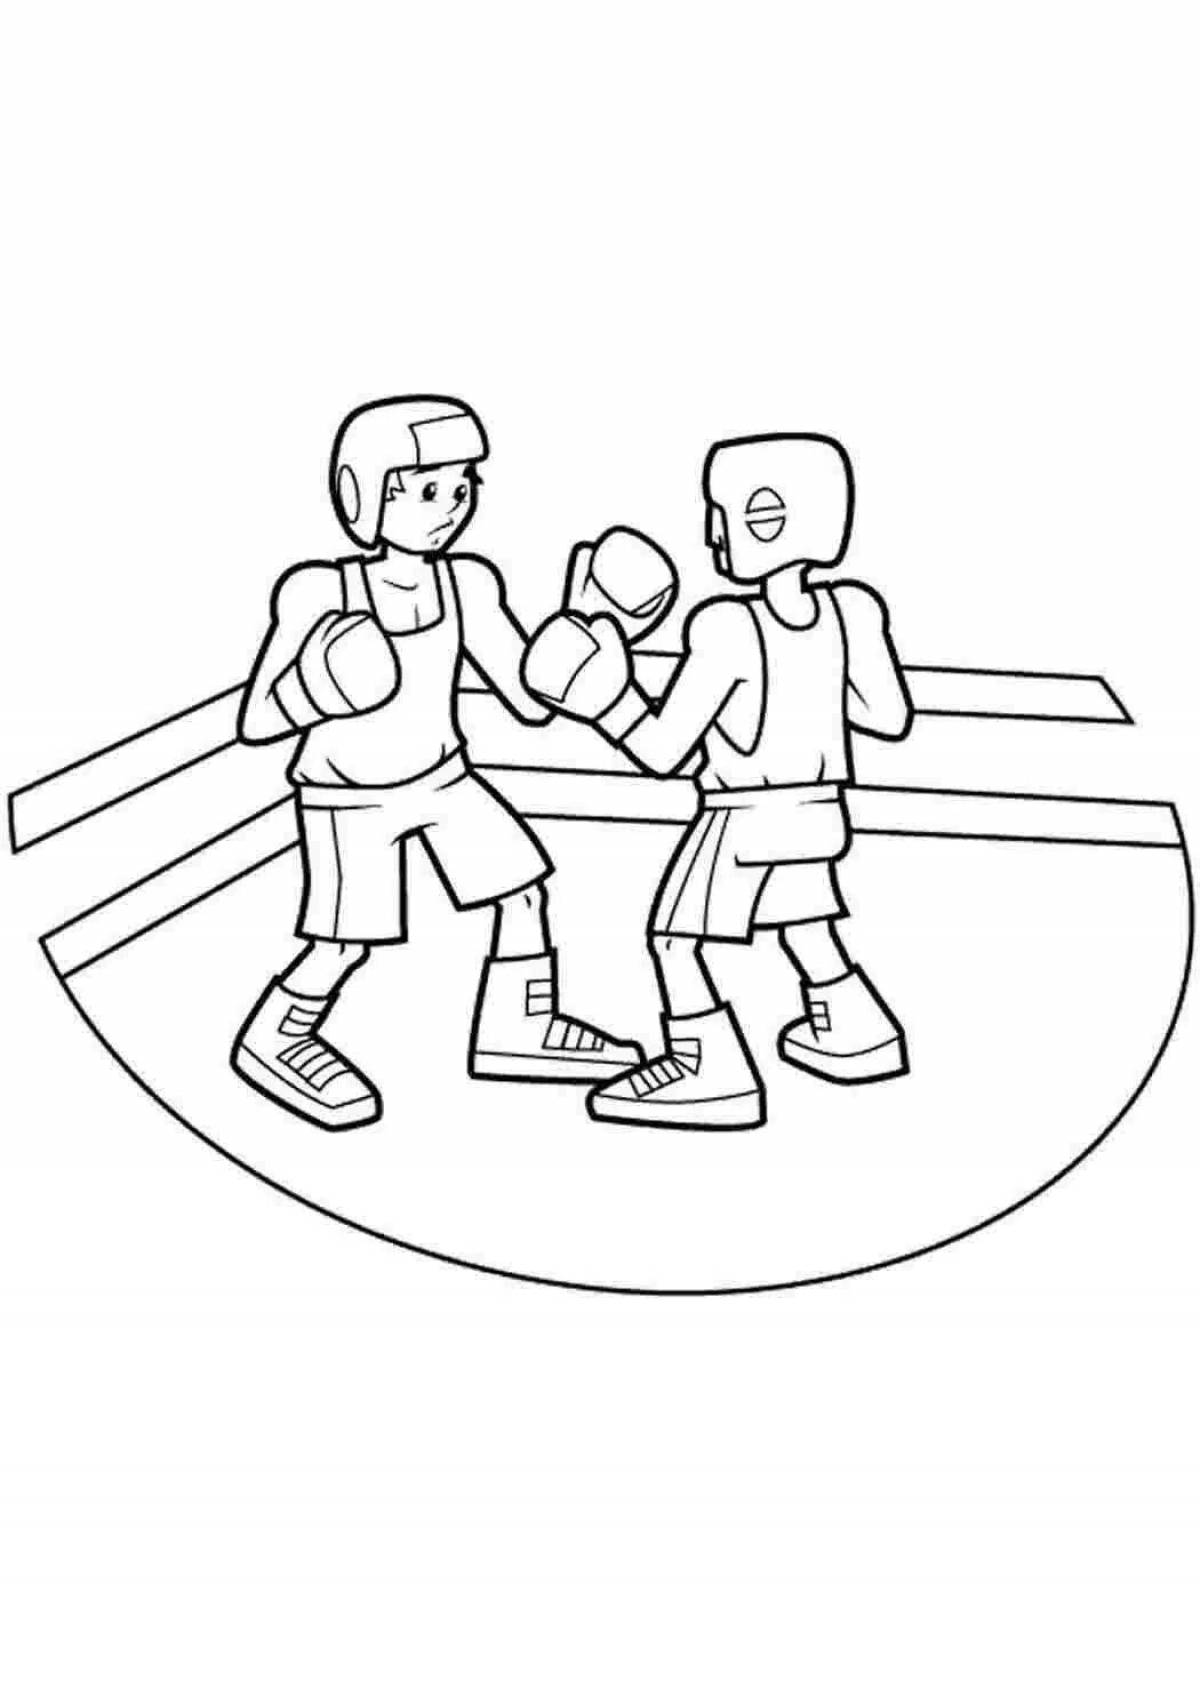 Очаровательная раскраска бокса для детей